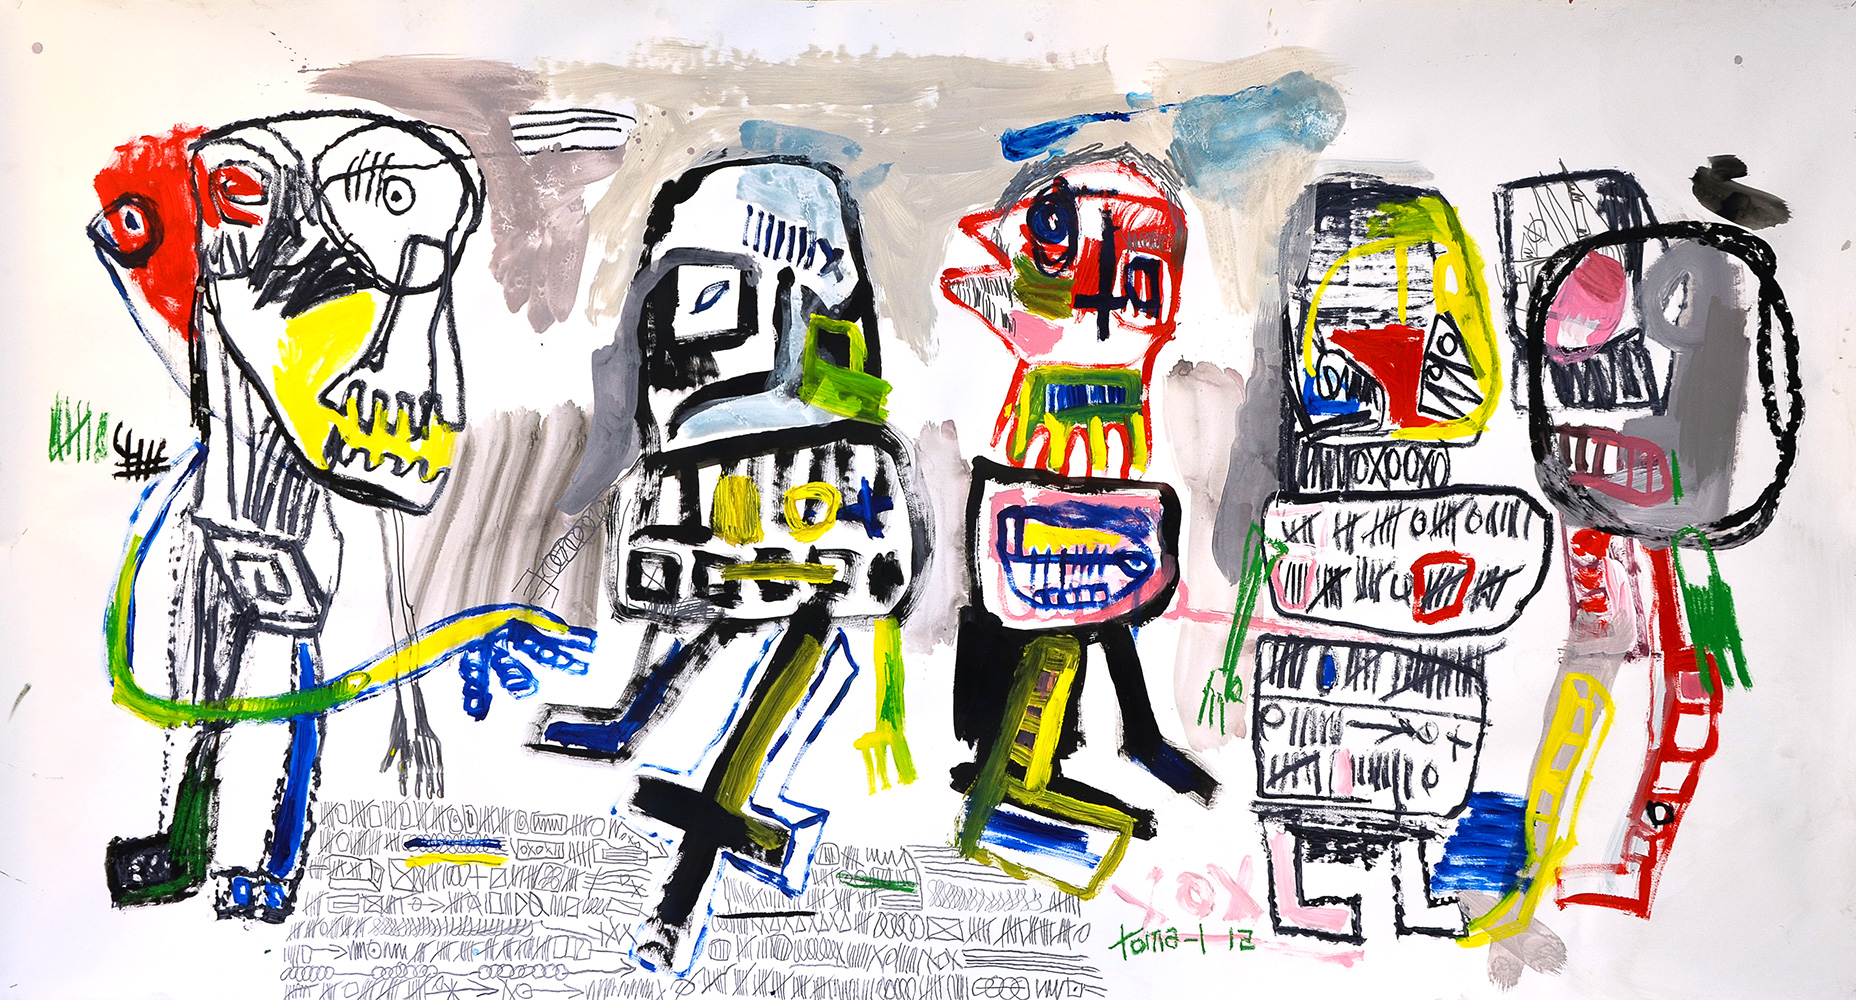 Graphic Family and Color 1 Mixte sur papier contre collé sur toile.279x150cmToile exposée à la Galerie W, 44 rue Lepic 75018 Paris.
© Toma-L